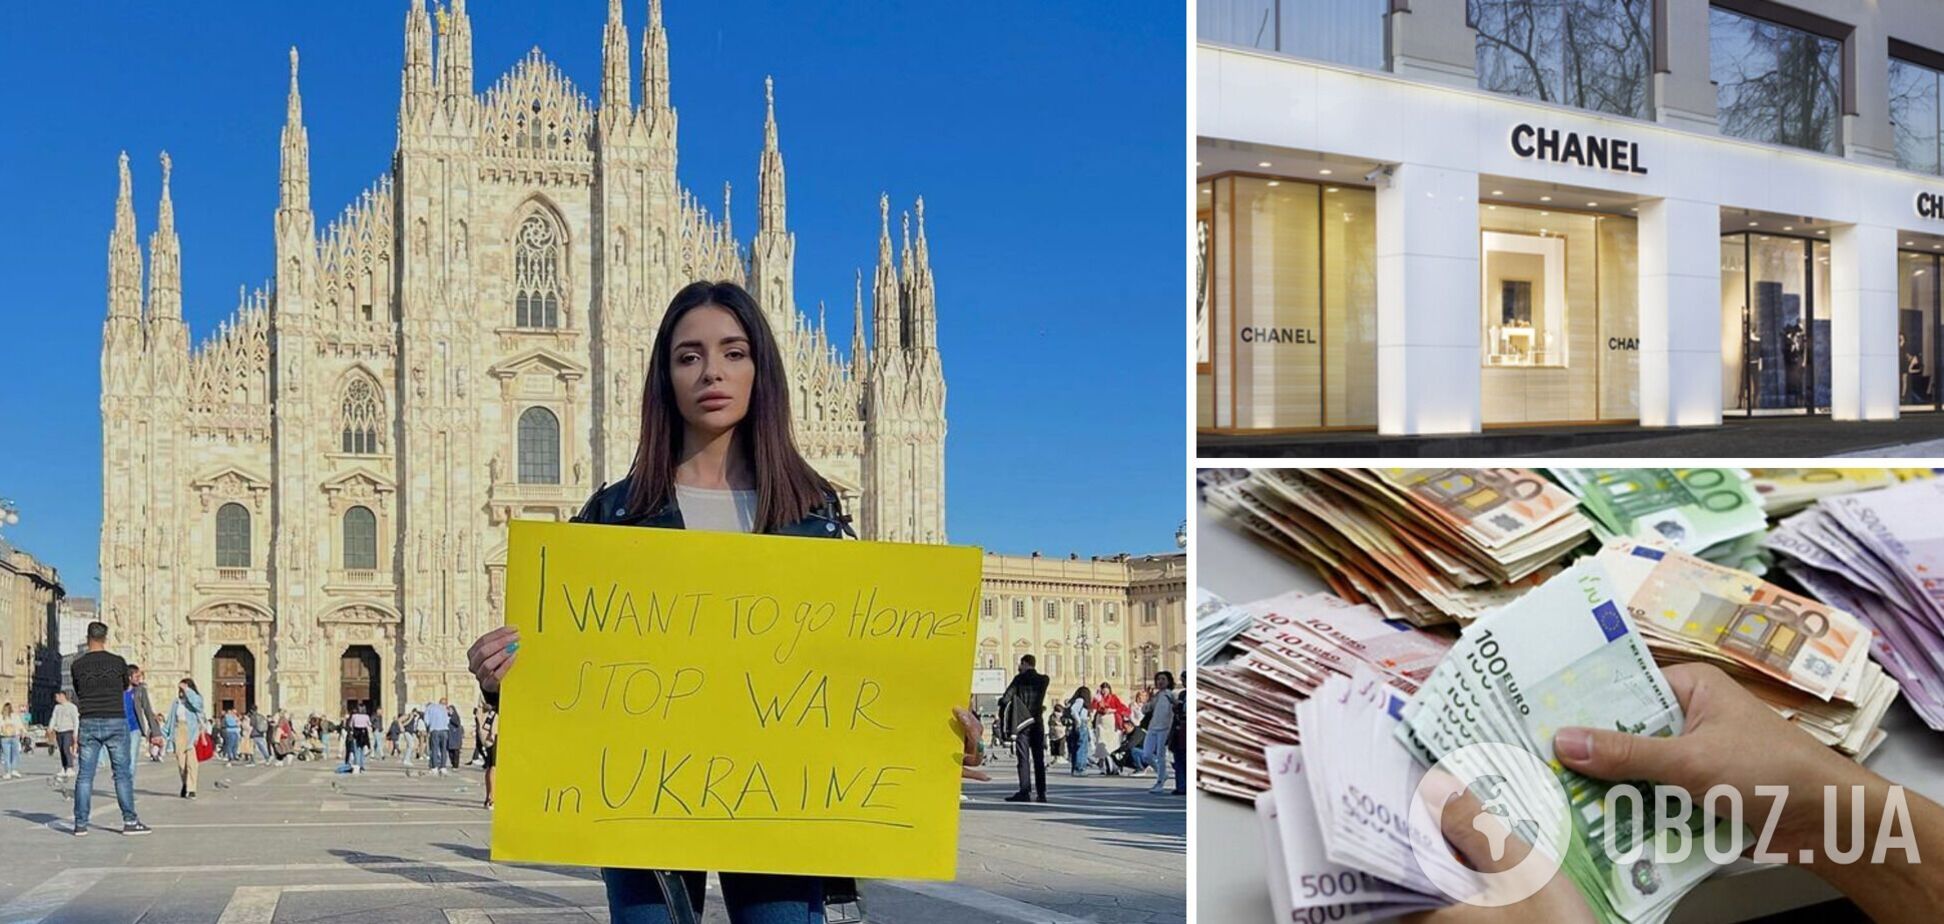 Надін Медведчук з 'Холостяка', яка втекла до Італії, втрапила в скандал через сумку Сhanel та виплати біженцям